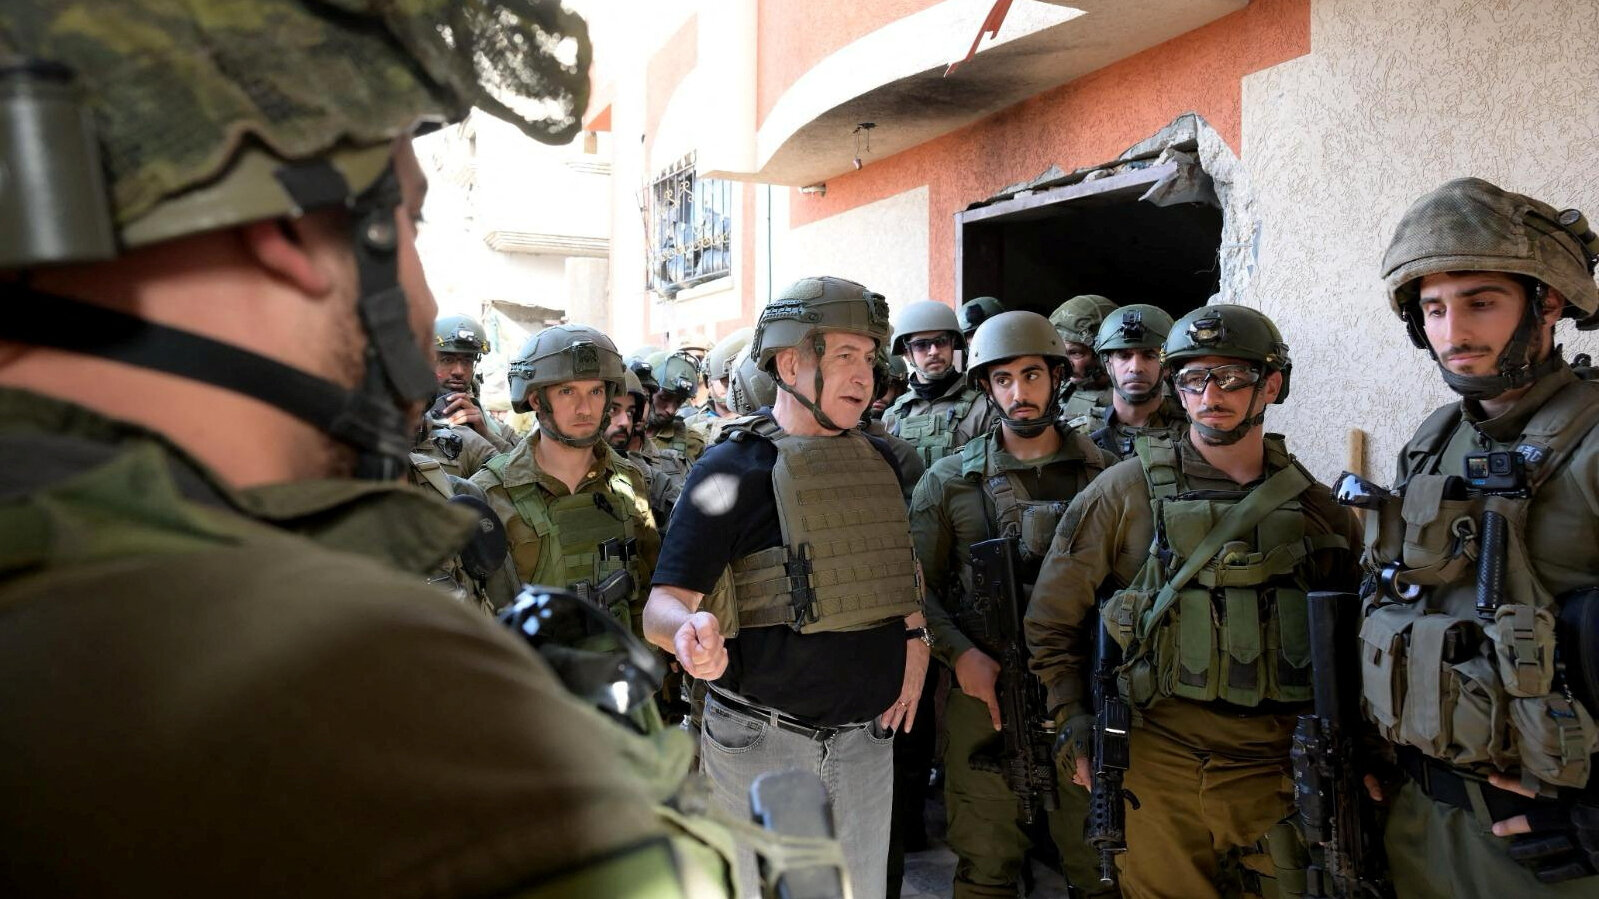 L'ex generale: "I rapporti tra Netanyahu e leader militari sono al punto più basso"